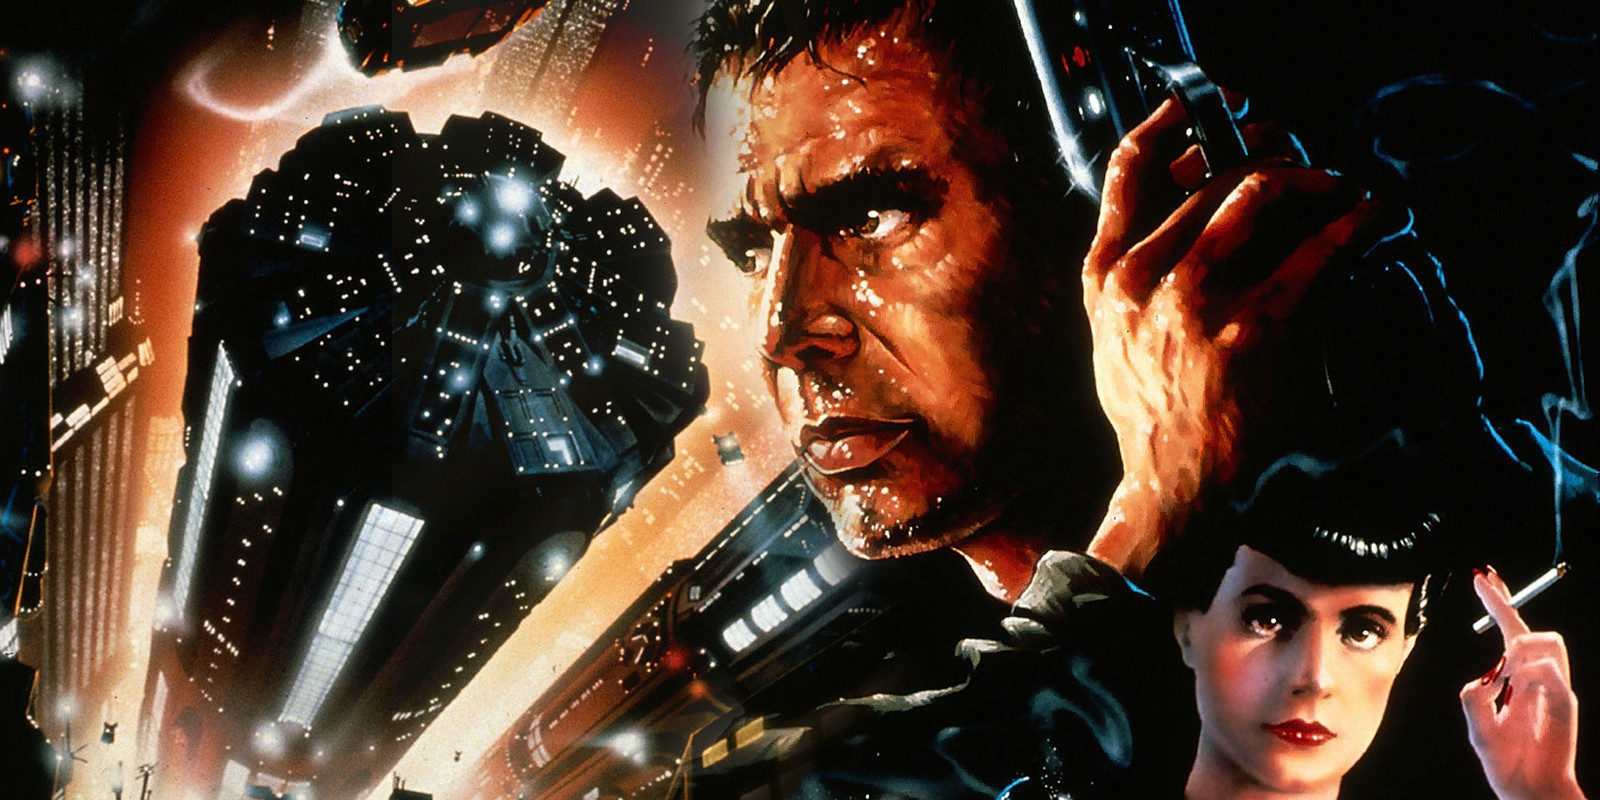 El director de 'Cowboy Bebop' dirigirá un corto de 'Blade Runner'